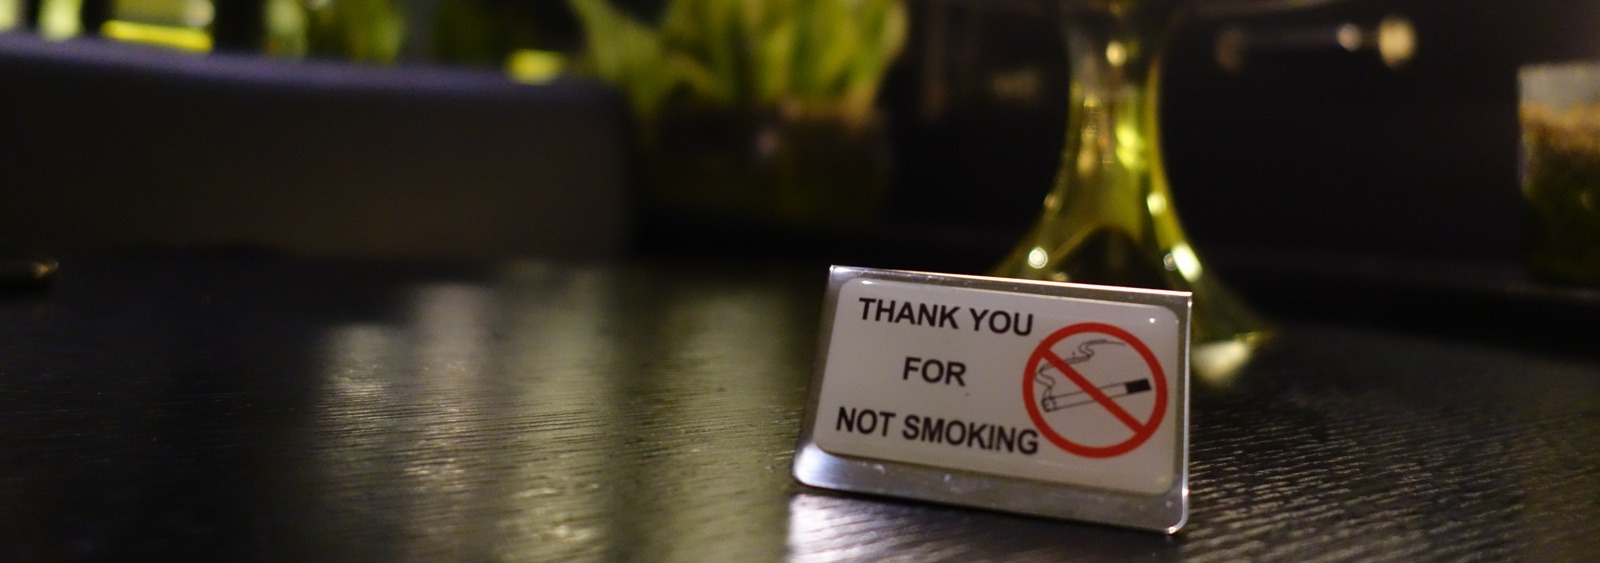 Αντικαπνιστικός νόμος 2019: Πελάτες βγαίνουν έξω για τσιγάρο και… εξαφανίζονται